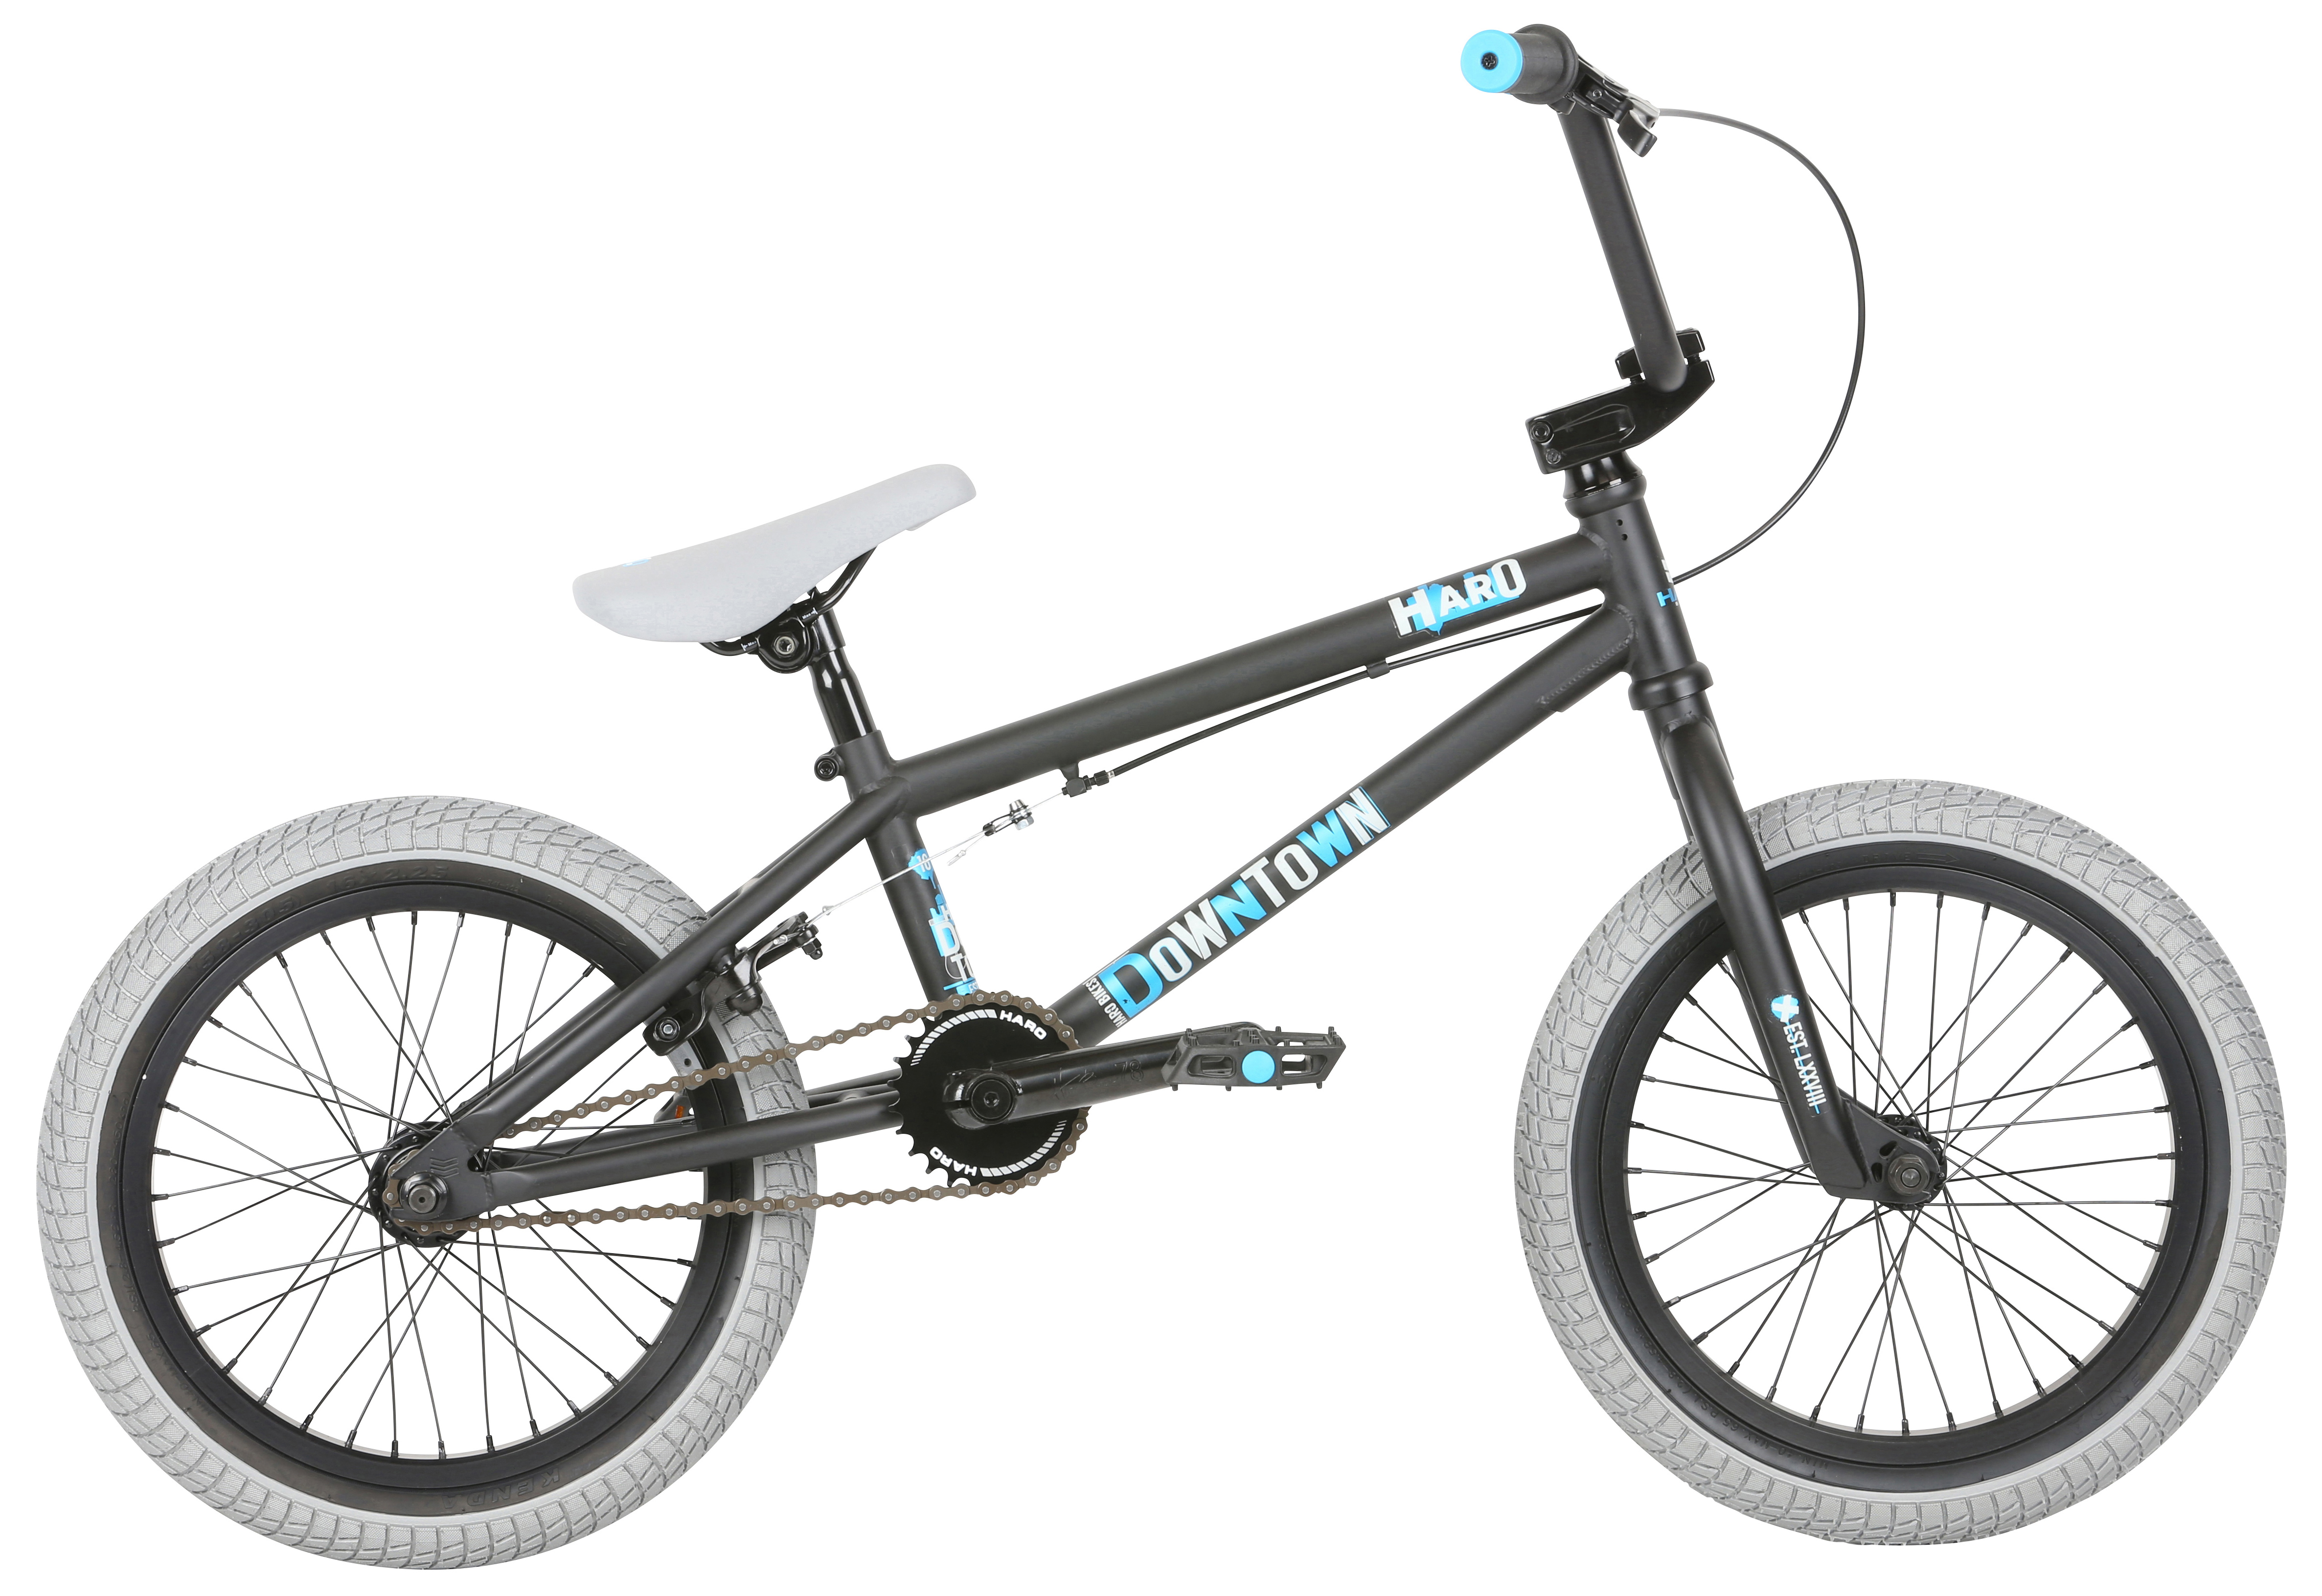  Отзывы о Велосипеде BMX Haro Downtown 16 2021